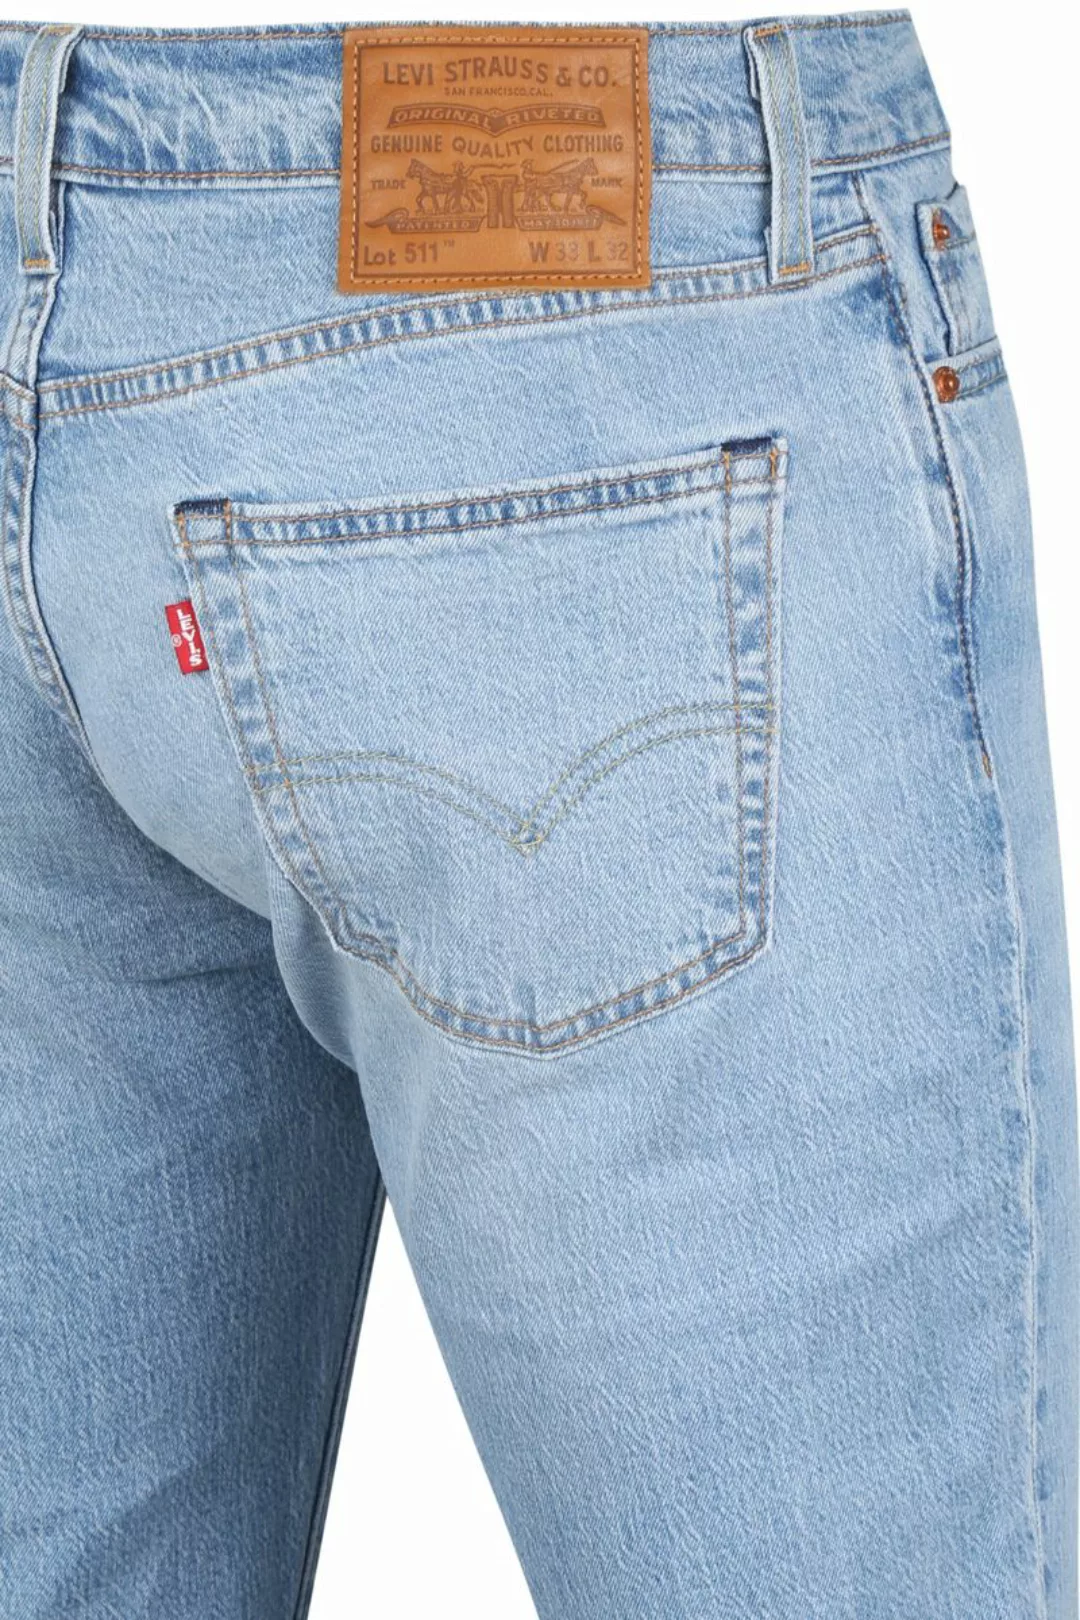 Levi's 511 Jeanshose Blau - Größe W 31 - L 32 günstig online kaufen